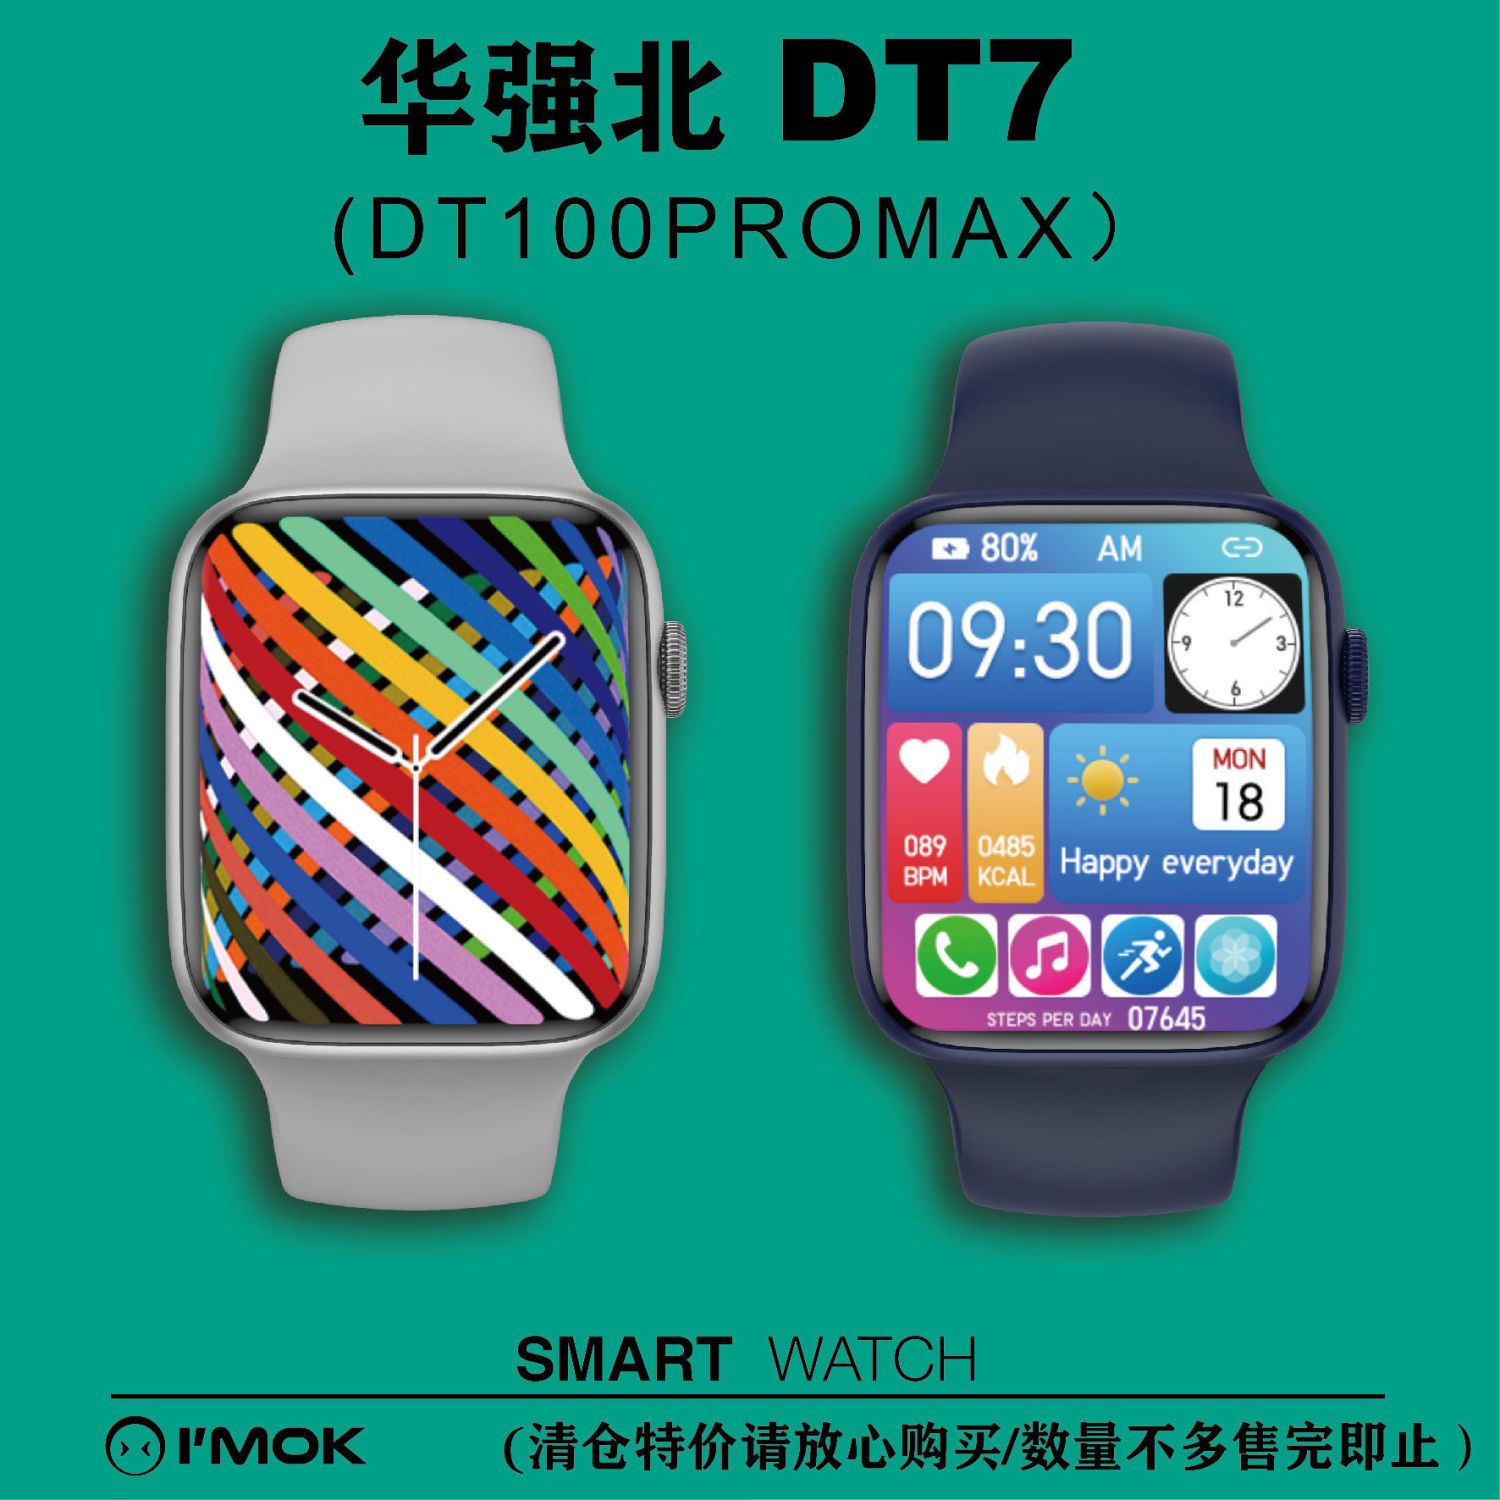 华强北s7 dt7 dt100promax顶配 智能手表 苹果安卓通用 抖音同款